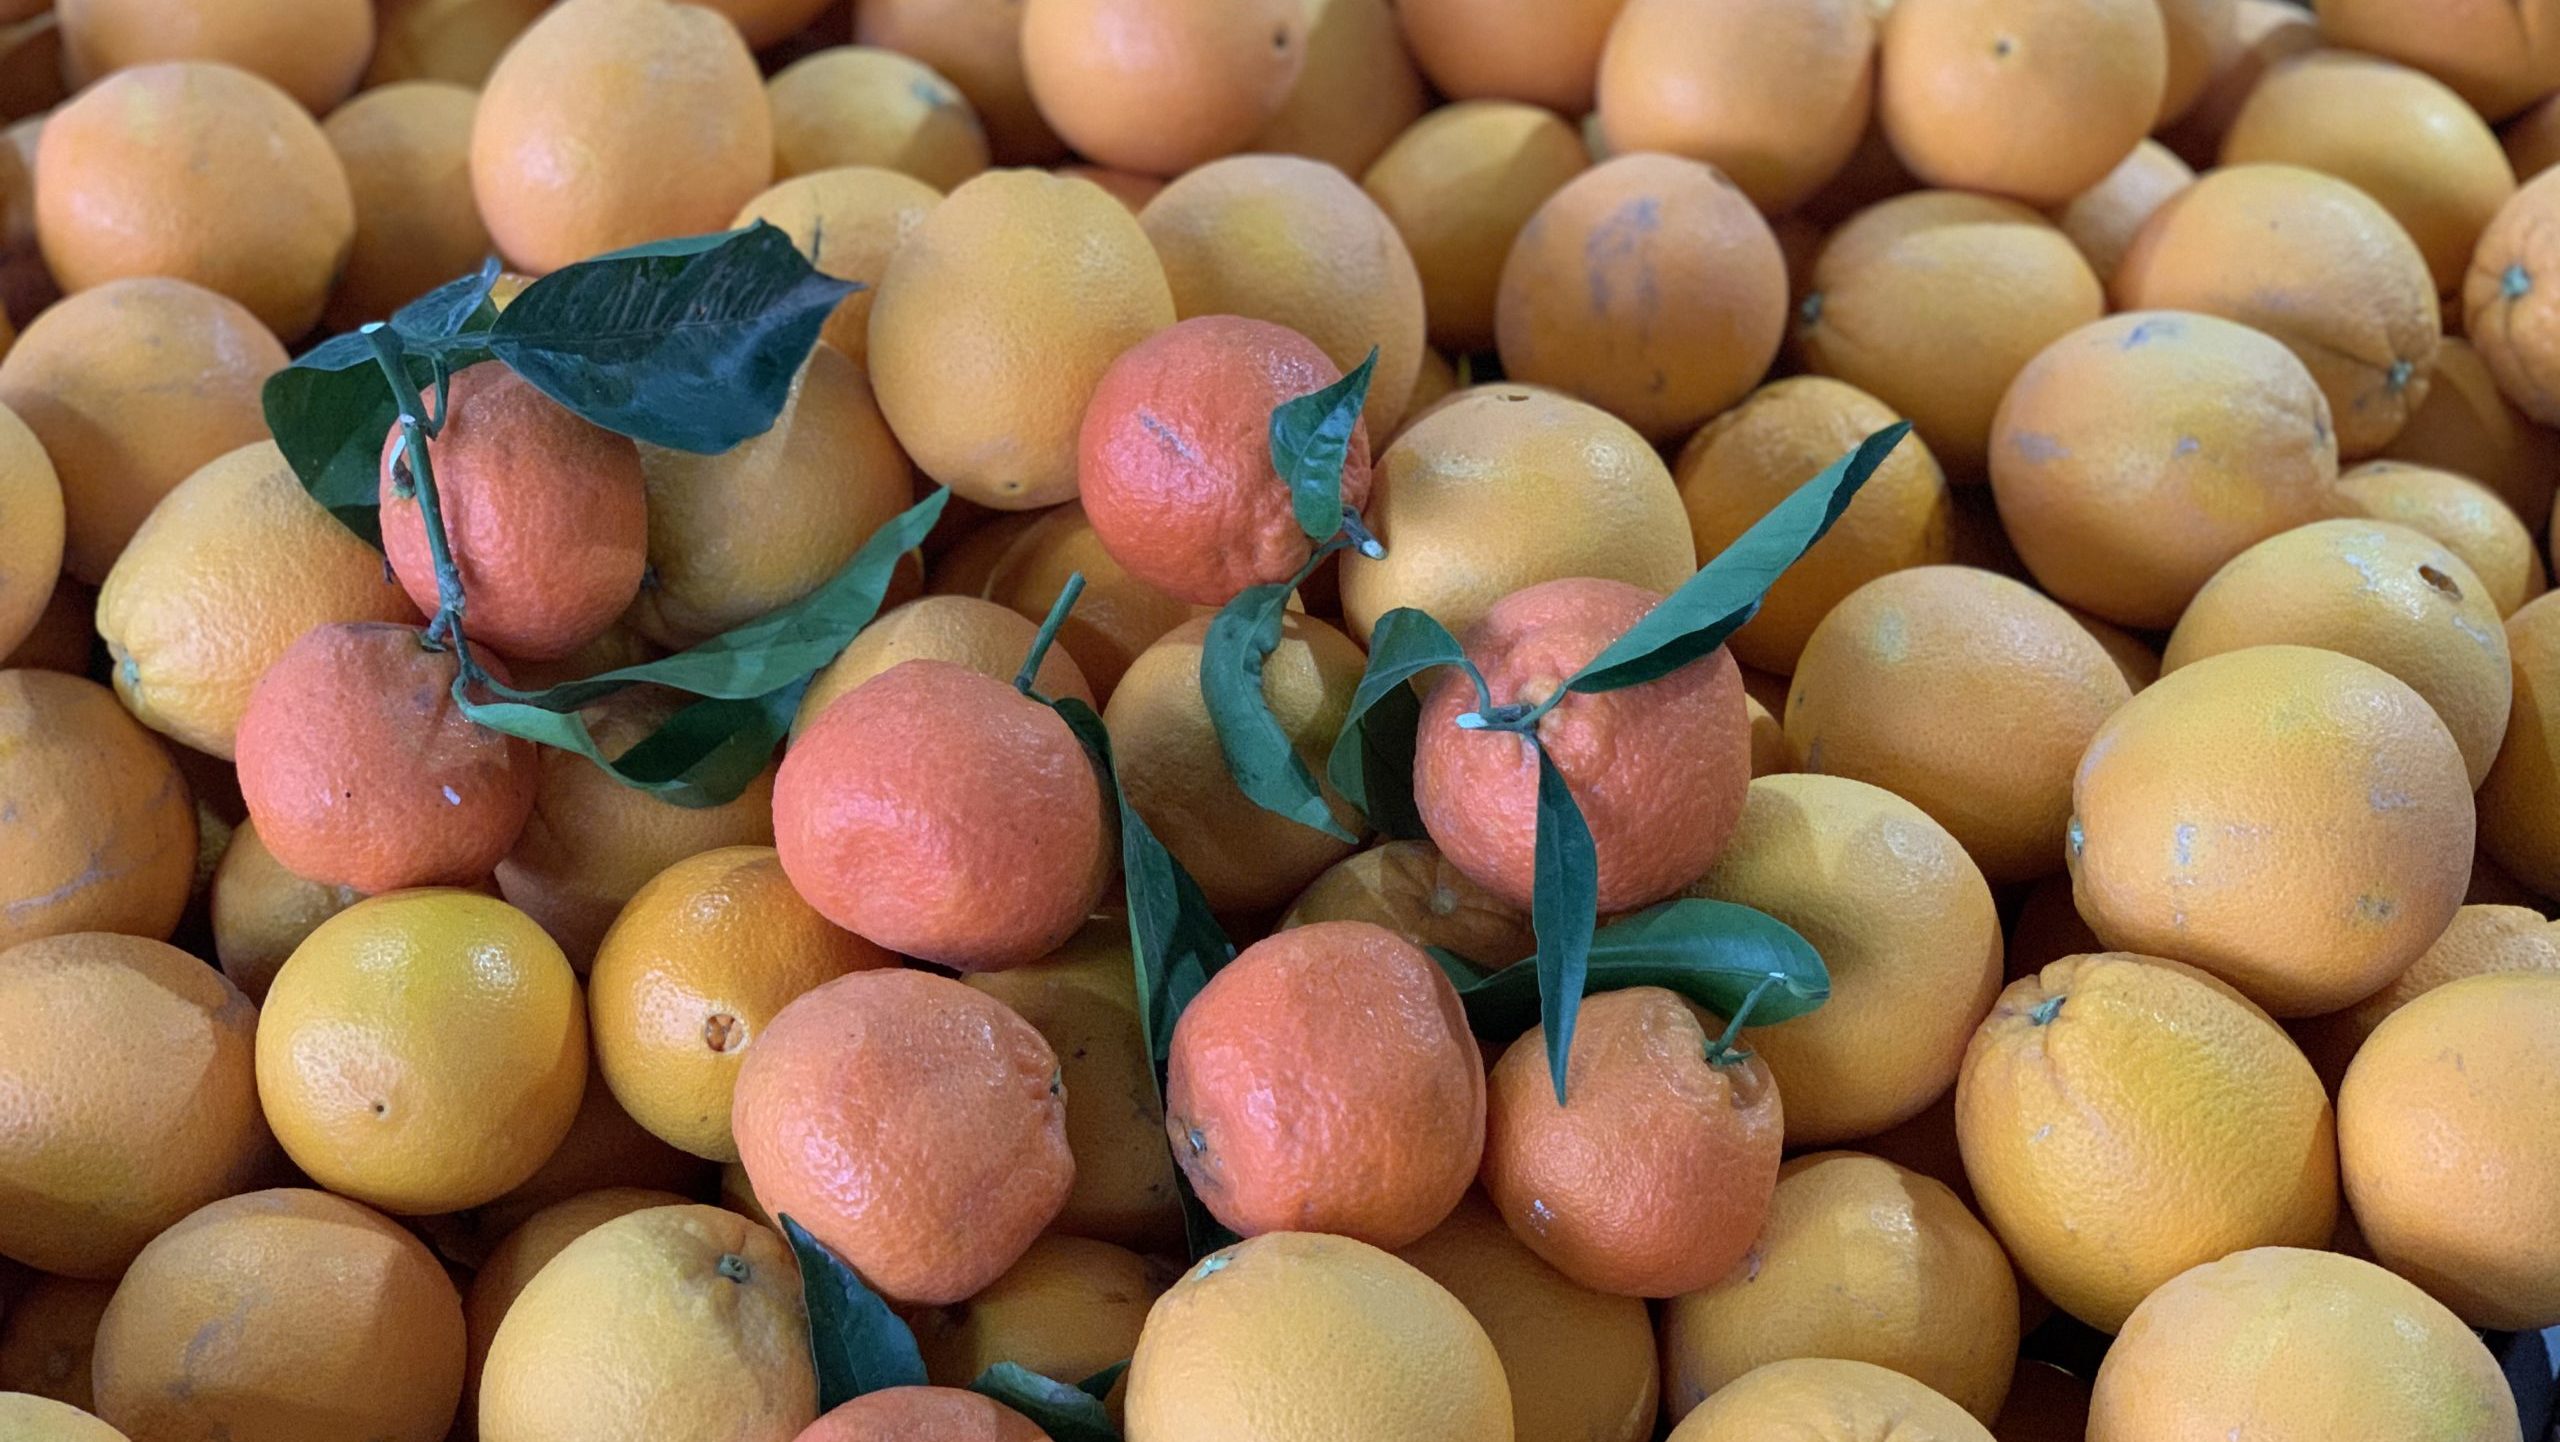 Naranjas y mandarinas, beneficios de su consumo